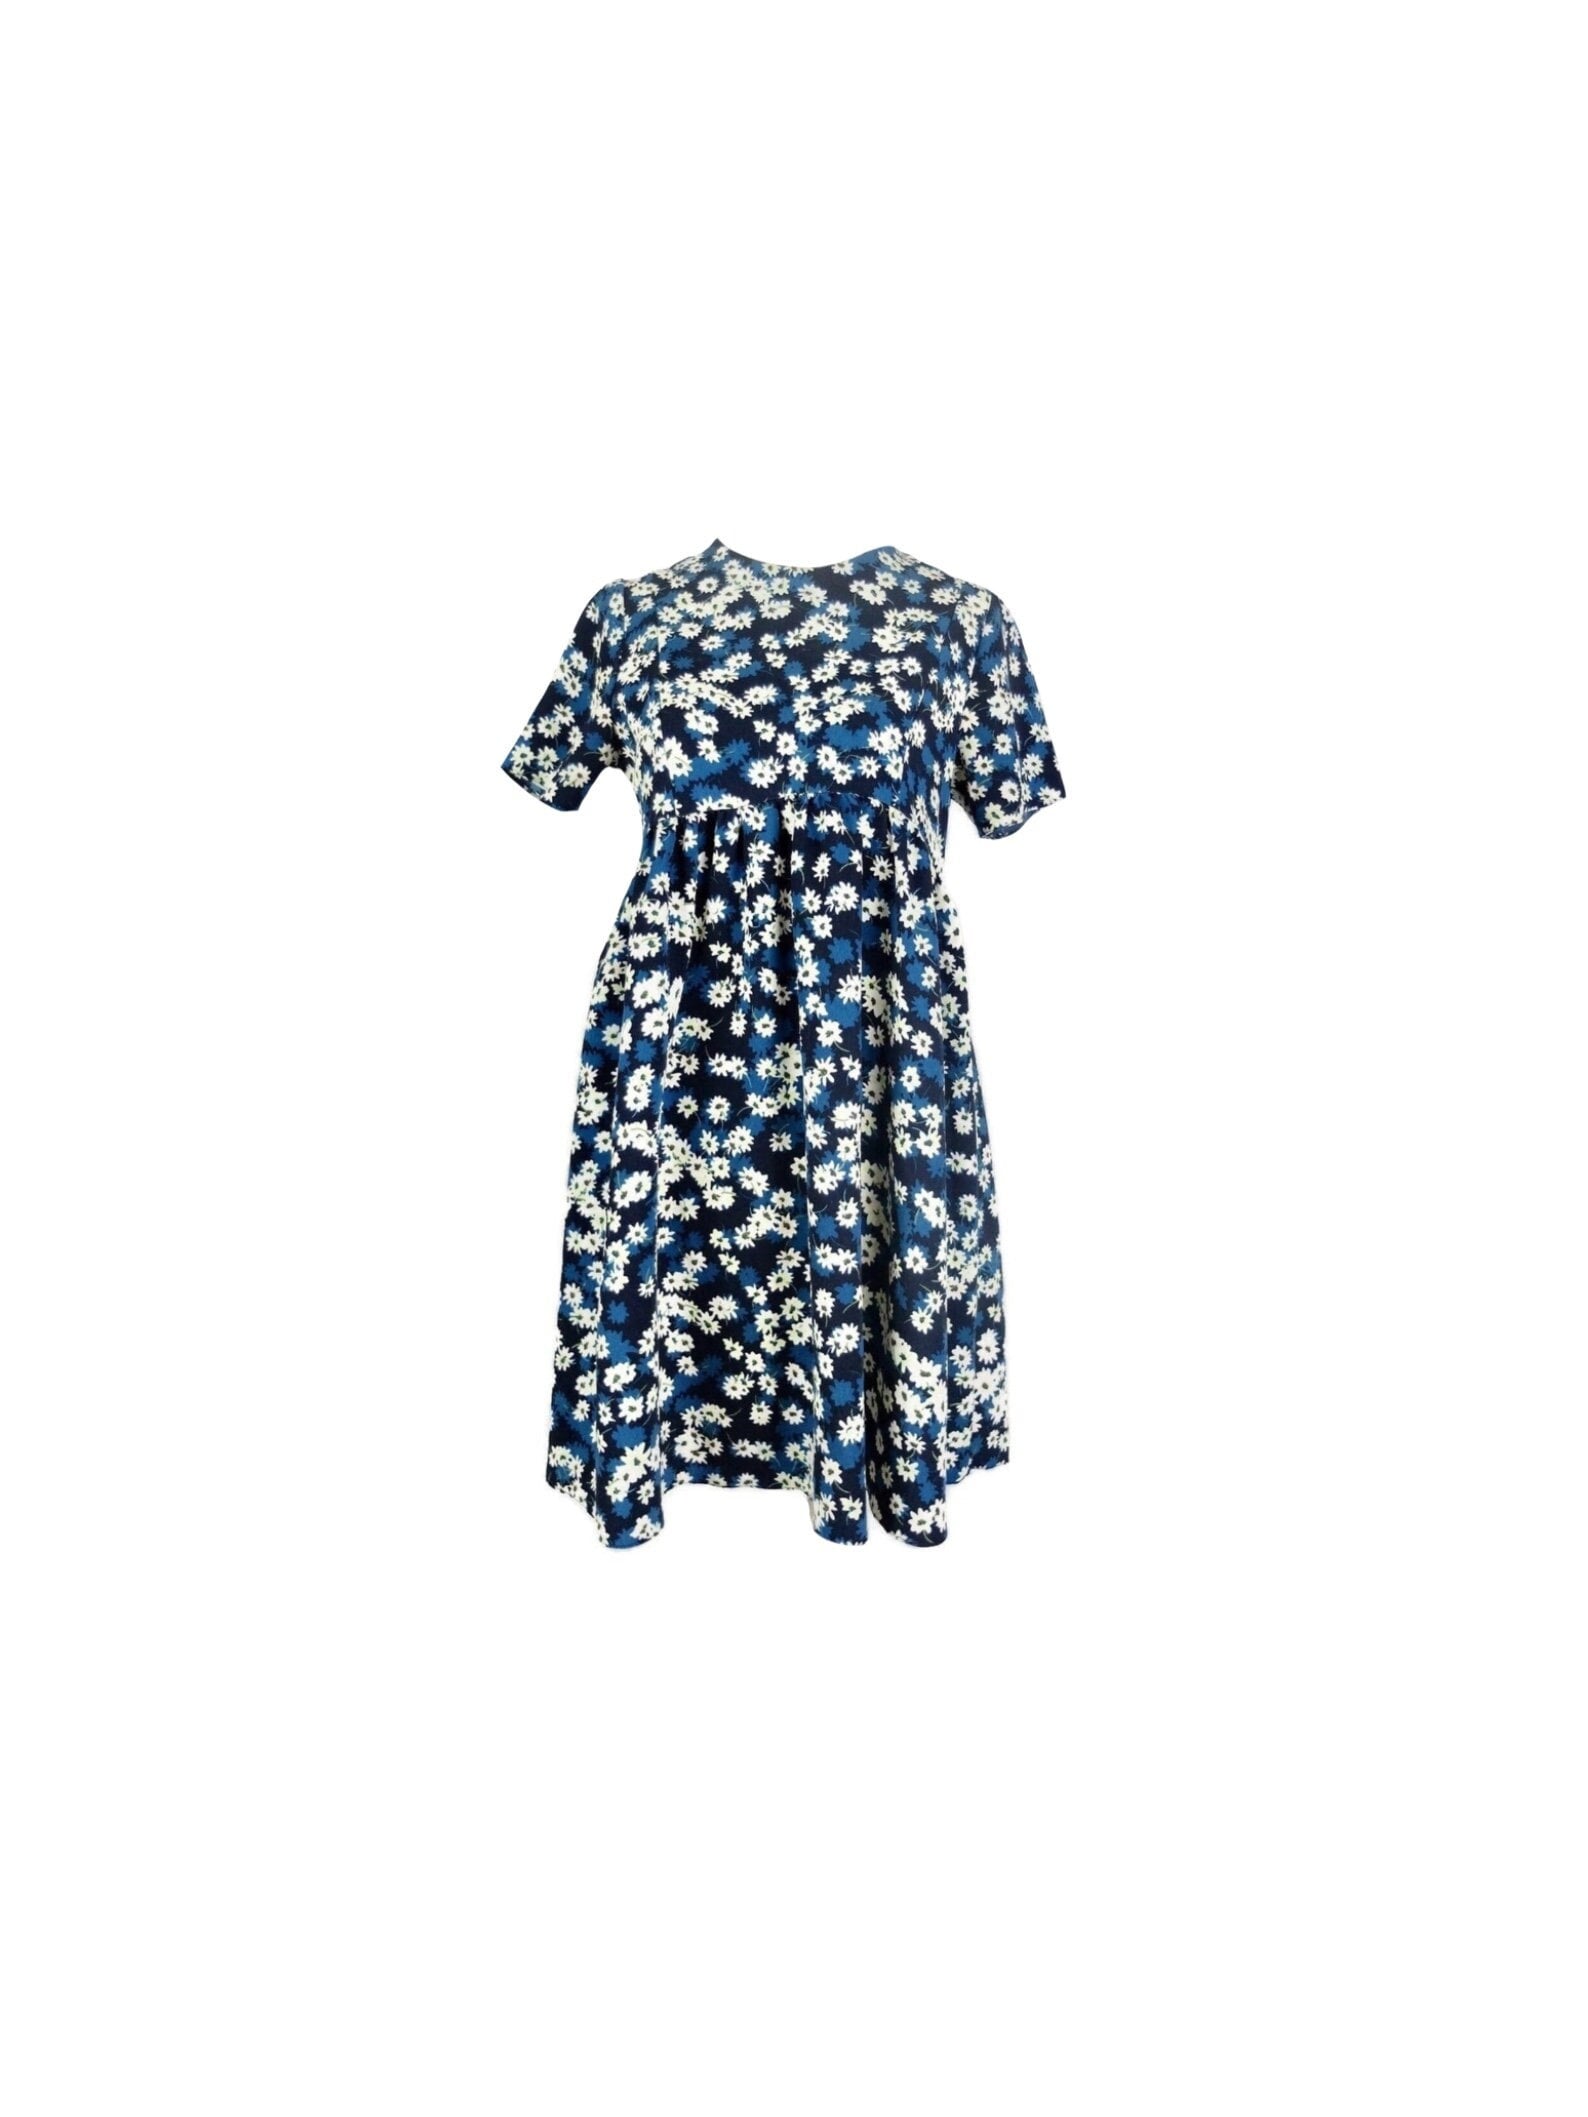 90Er Jahre Y2K Stil Blau & Weiß Floral Babydoll Kurzarm Stehkragen Minikleid | Größe Extra Small Xs von TheeCultivator